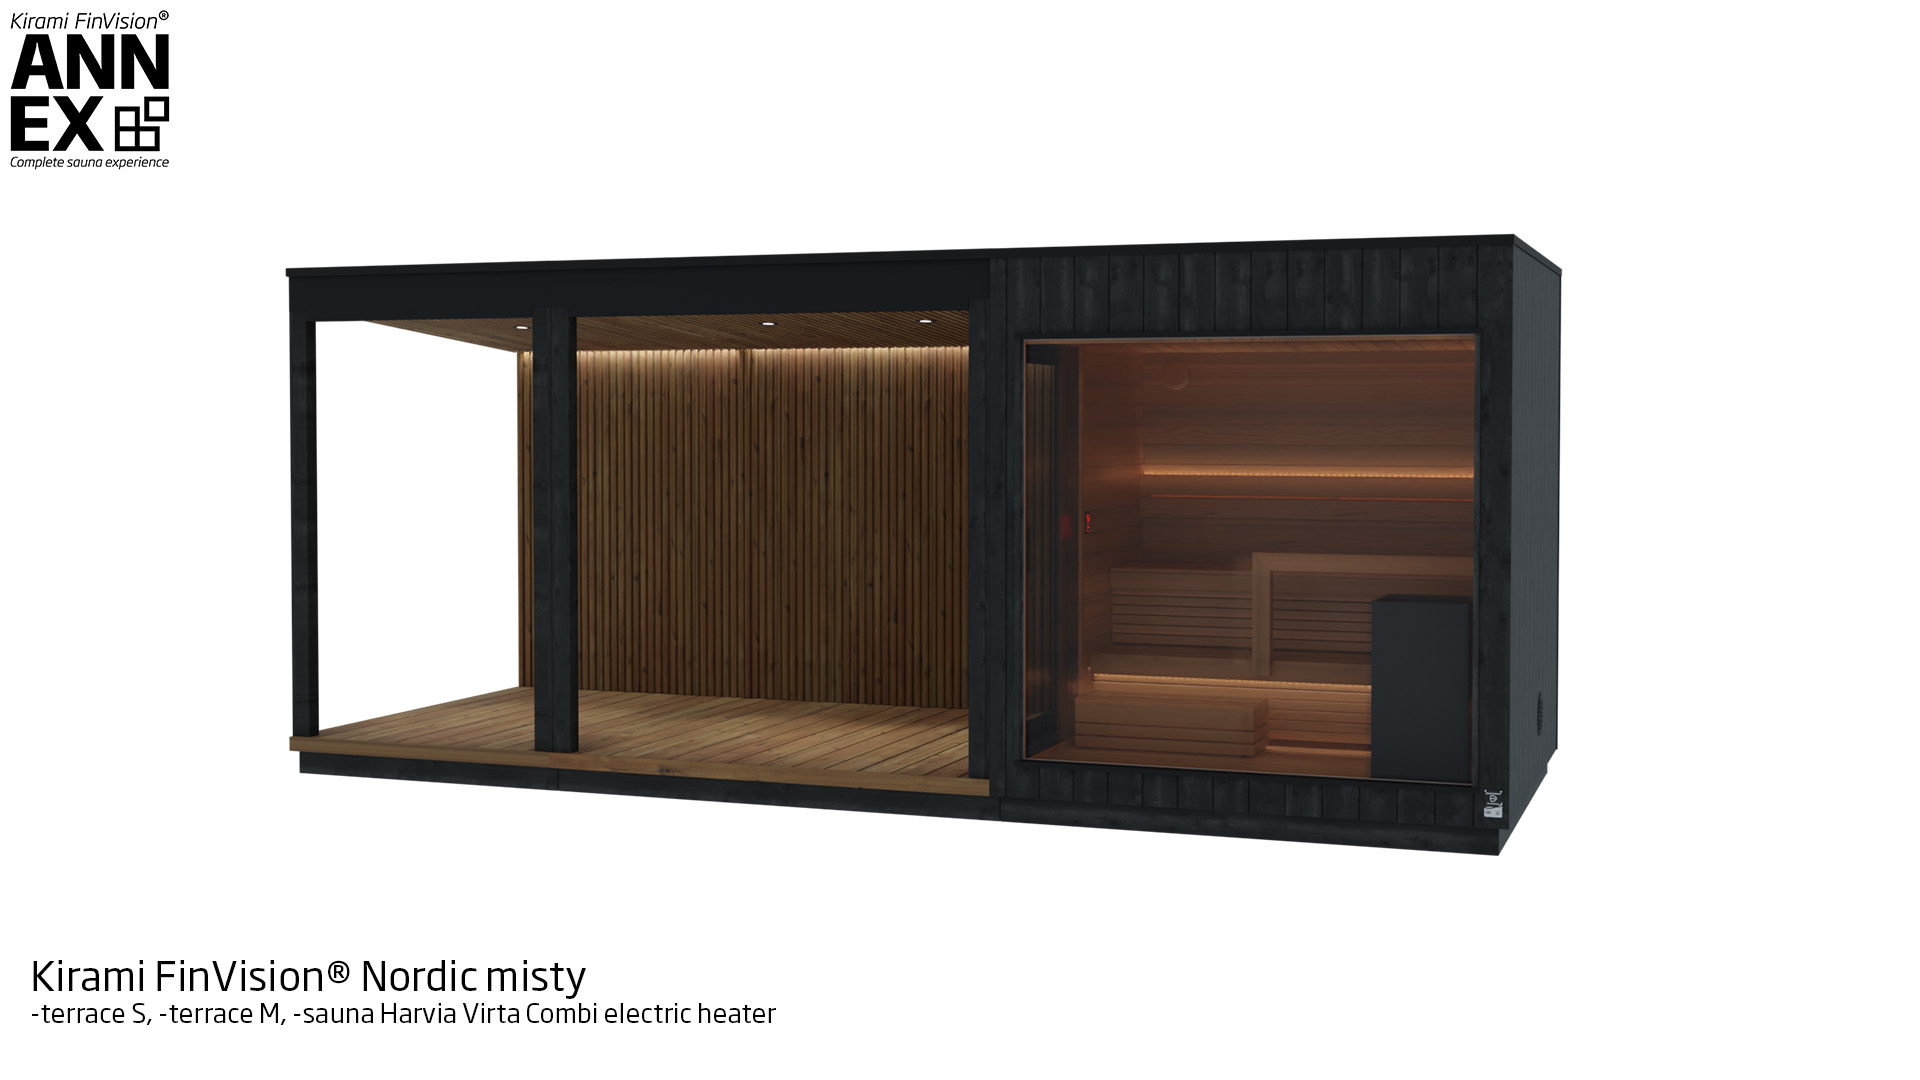 Kirami FinVision® -terassi S, terassi M, -sauna (with Harvia electric heater) Nordic misty | Kirami FinVision® Annex